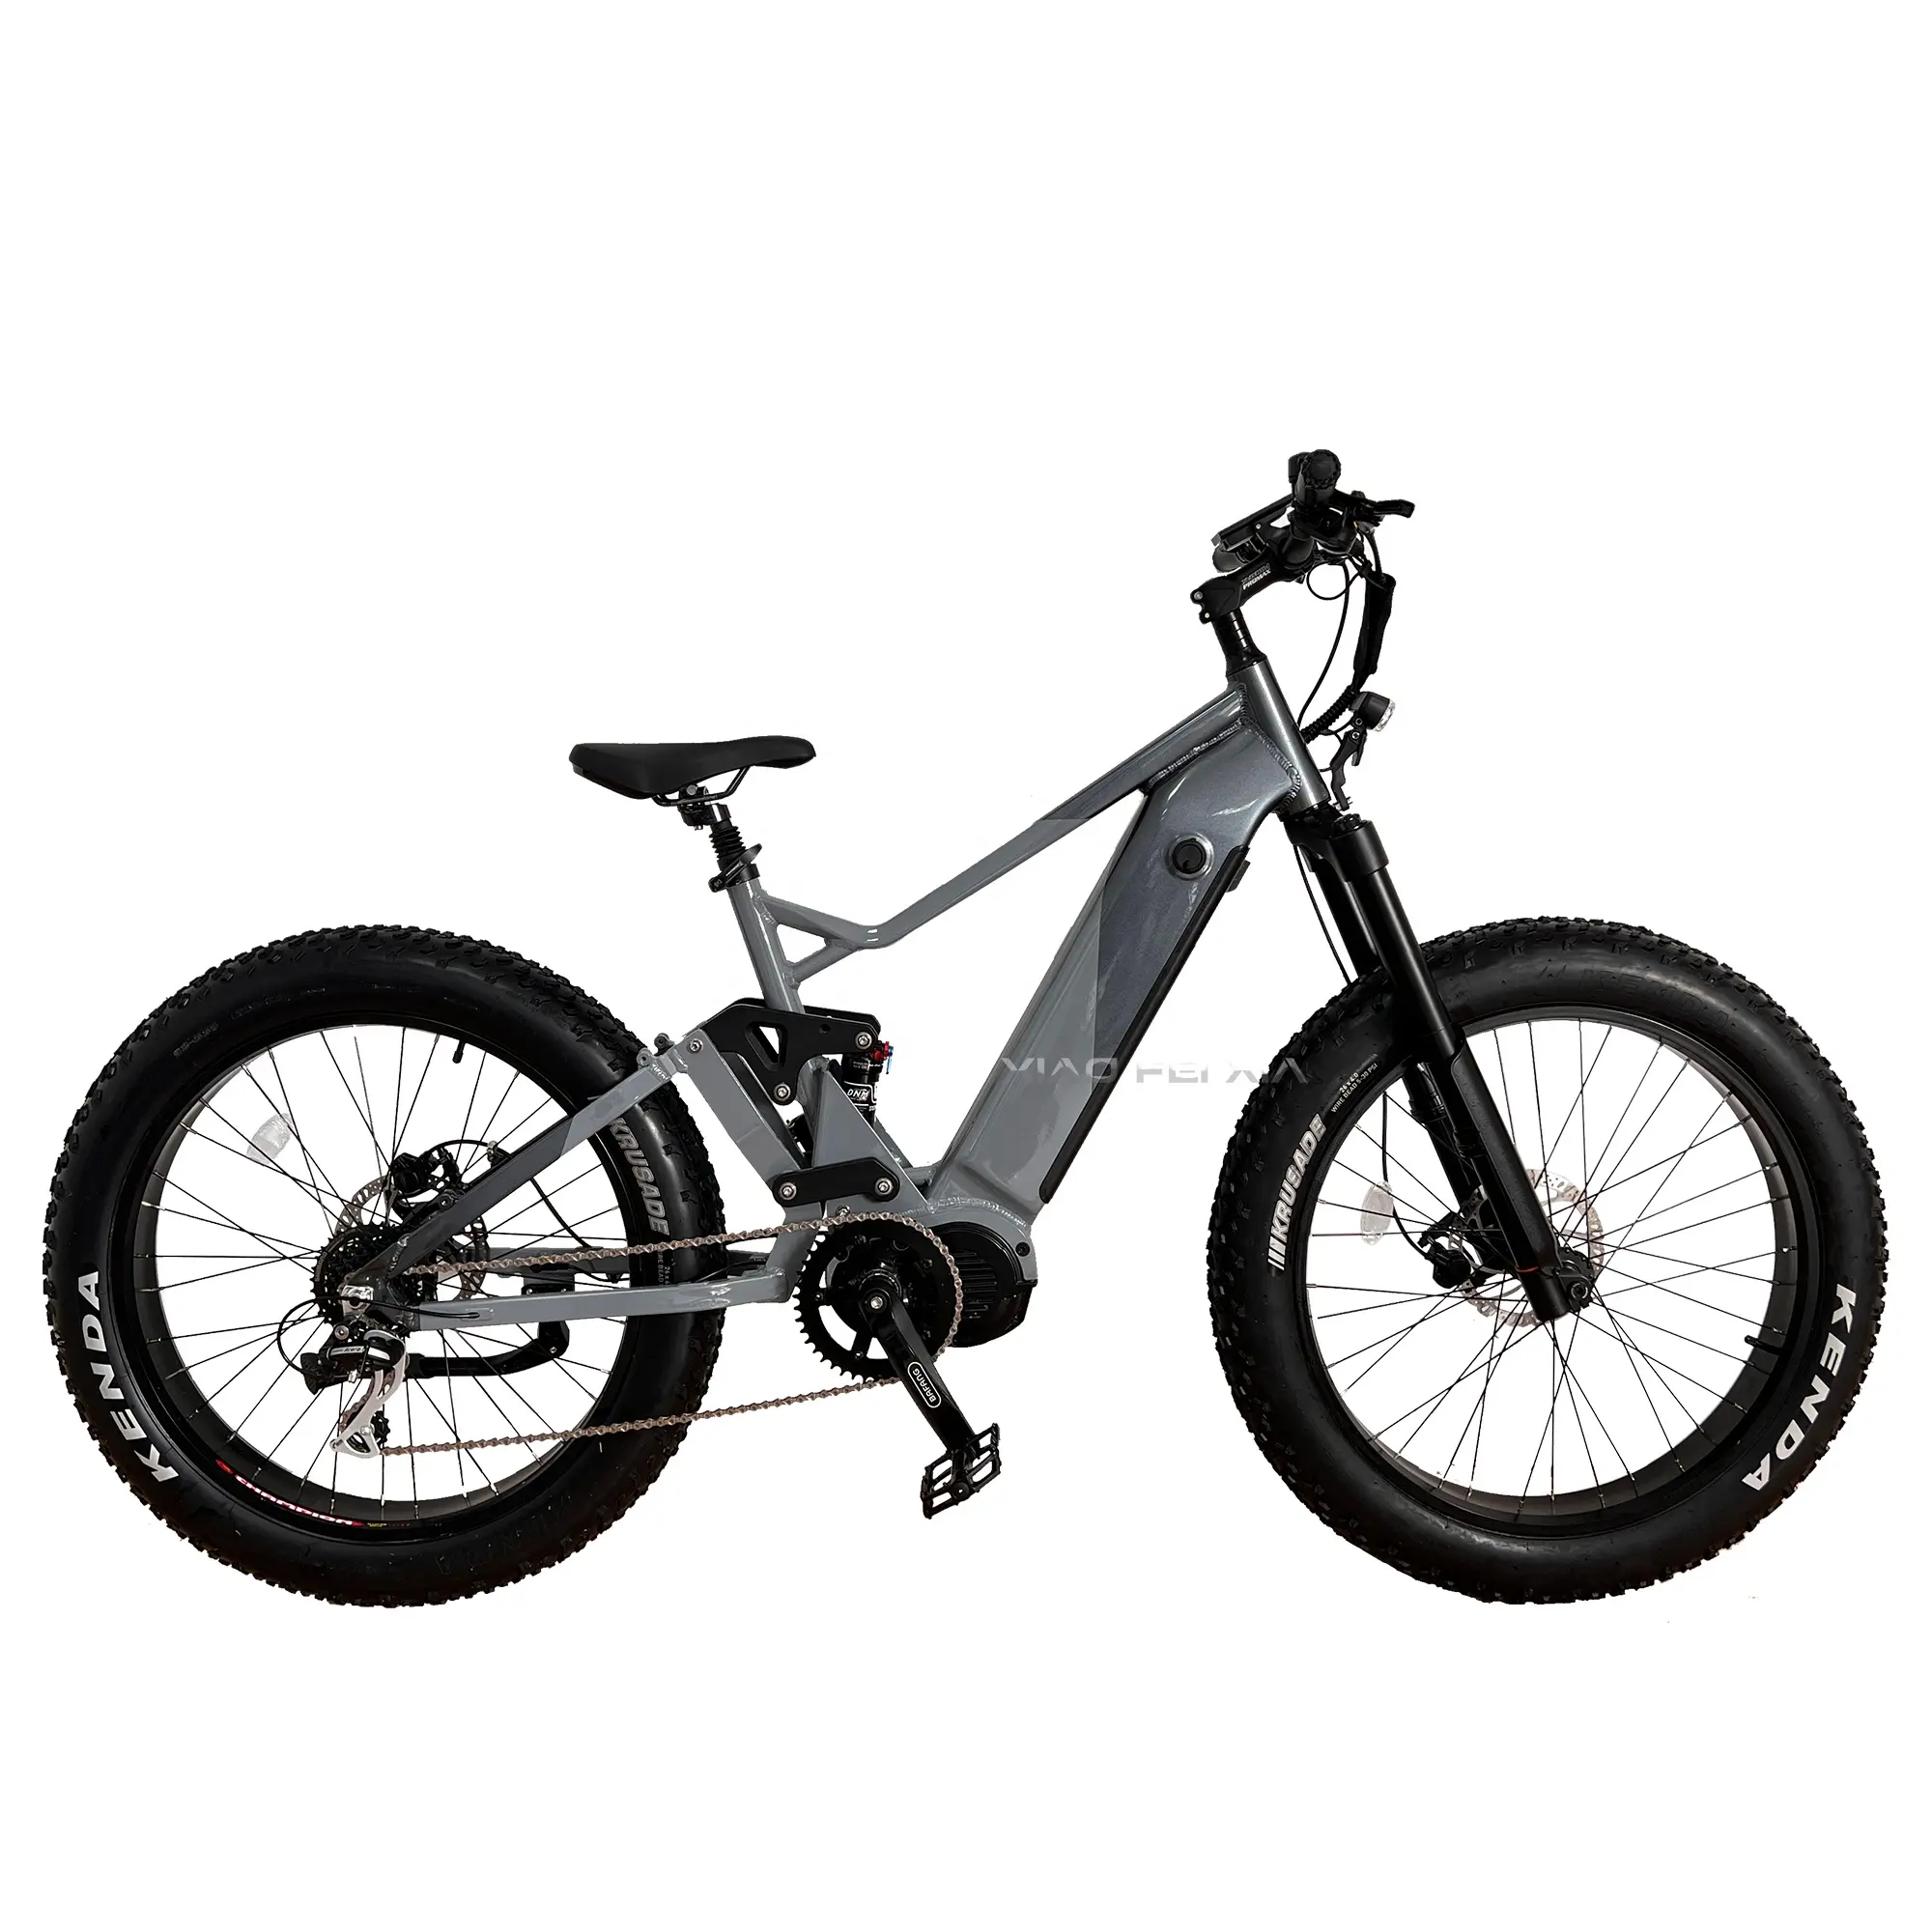 1000w mid drive ebike bafang g510 full suspension e-bike 26inch e-bike mtb e bikes 2022 electric bicycle bicicleta electric